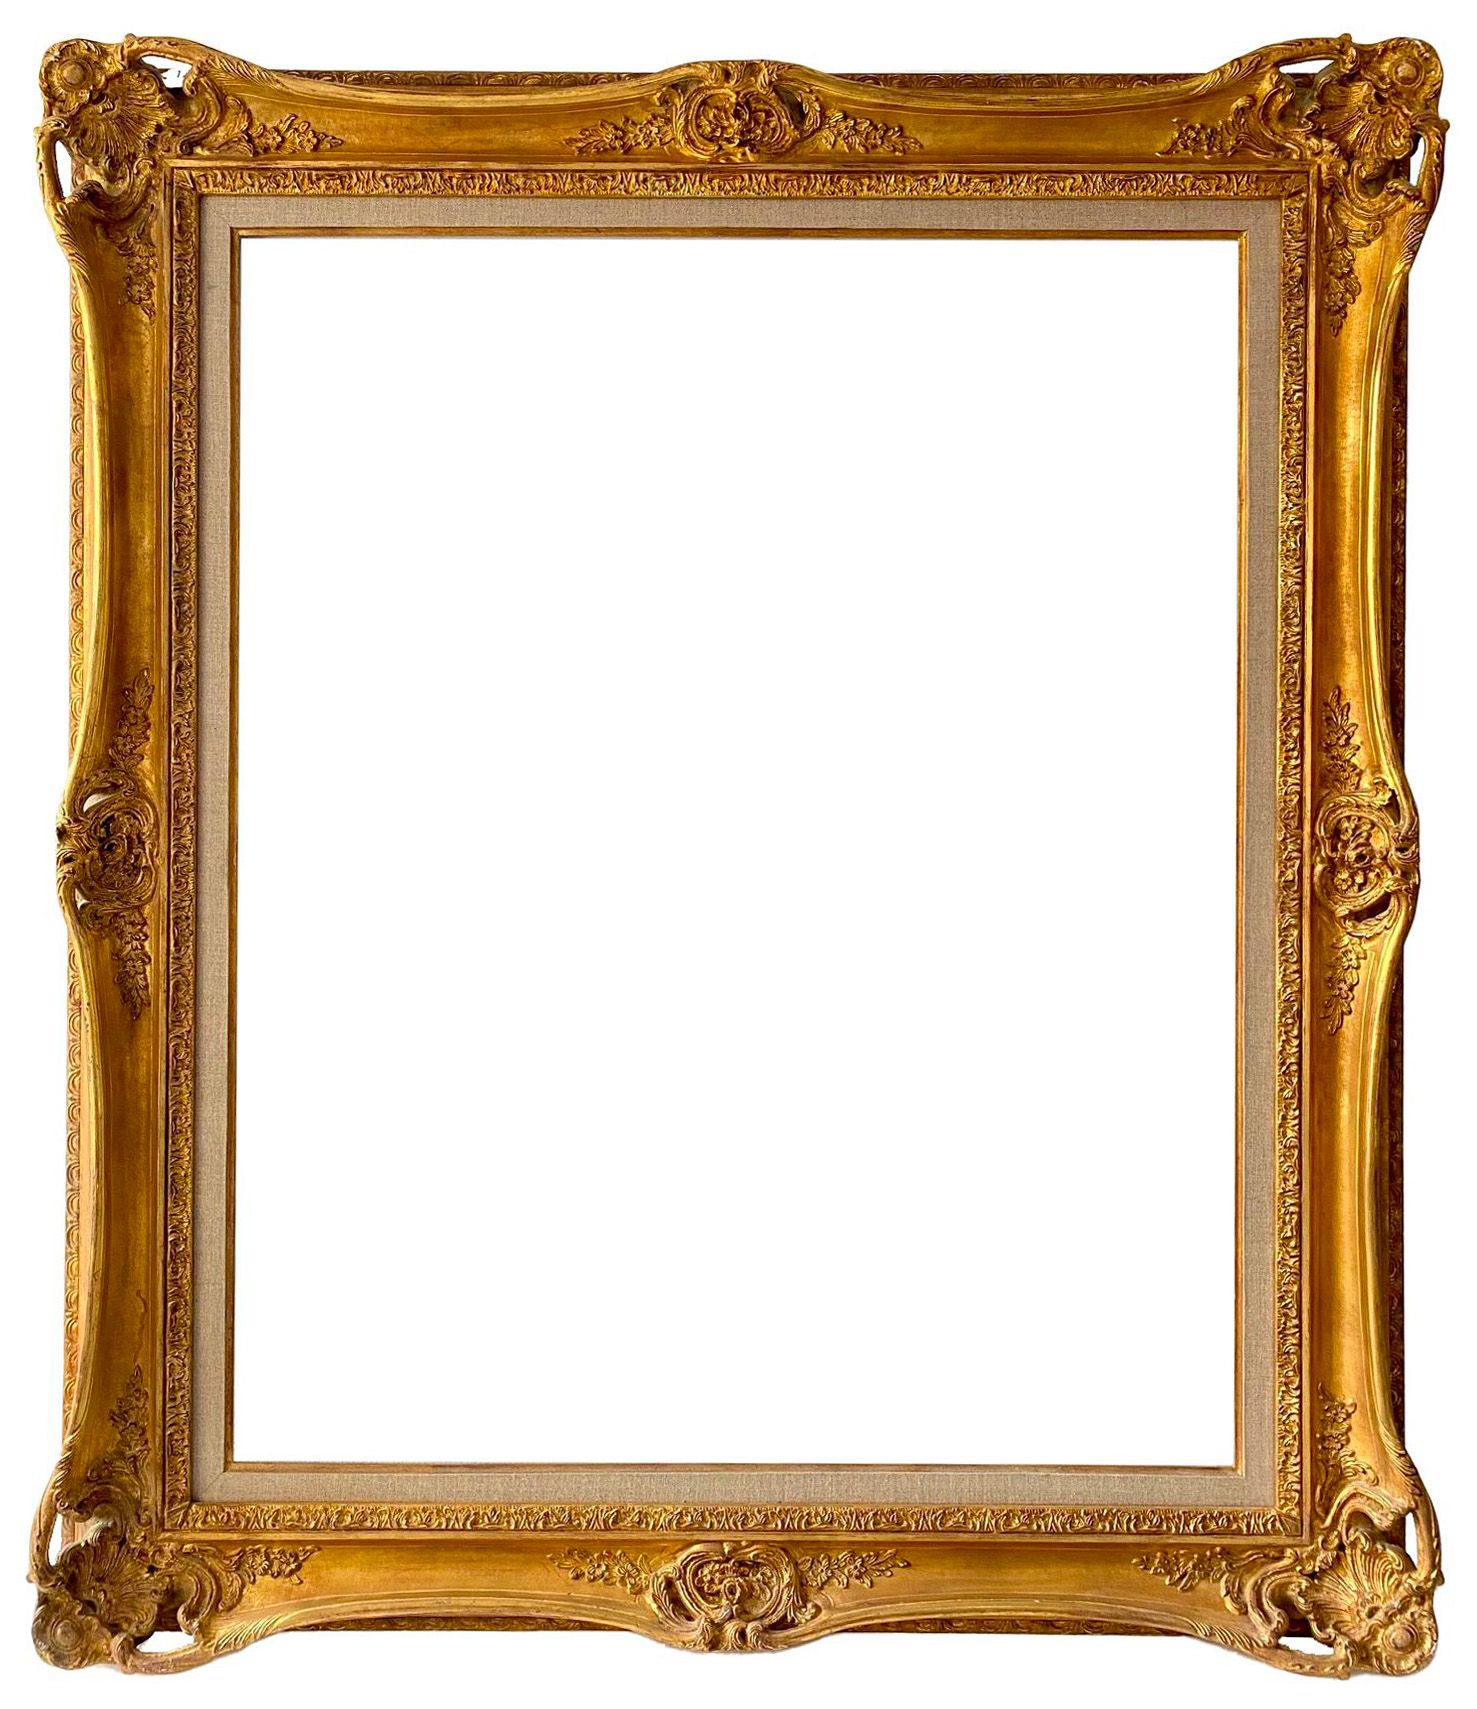 Cadre de style Louis XV - 92,70 x 73,80 - Réf - 1267